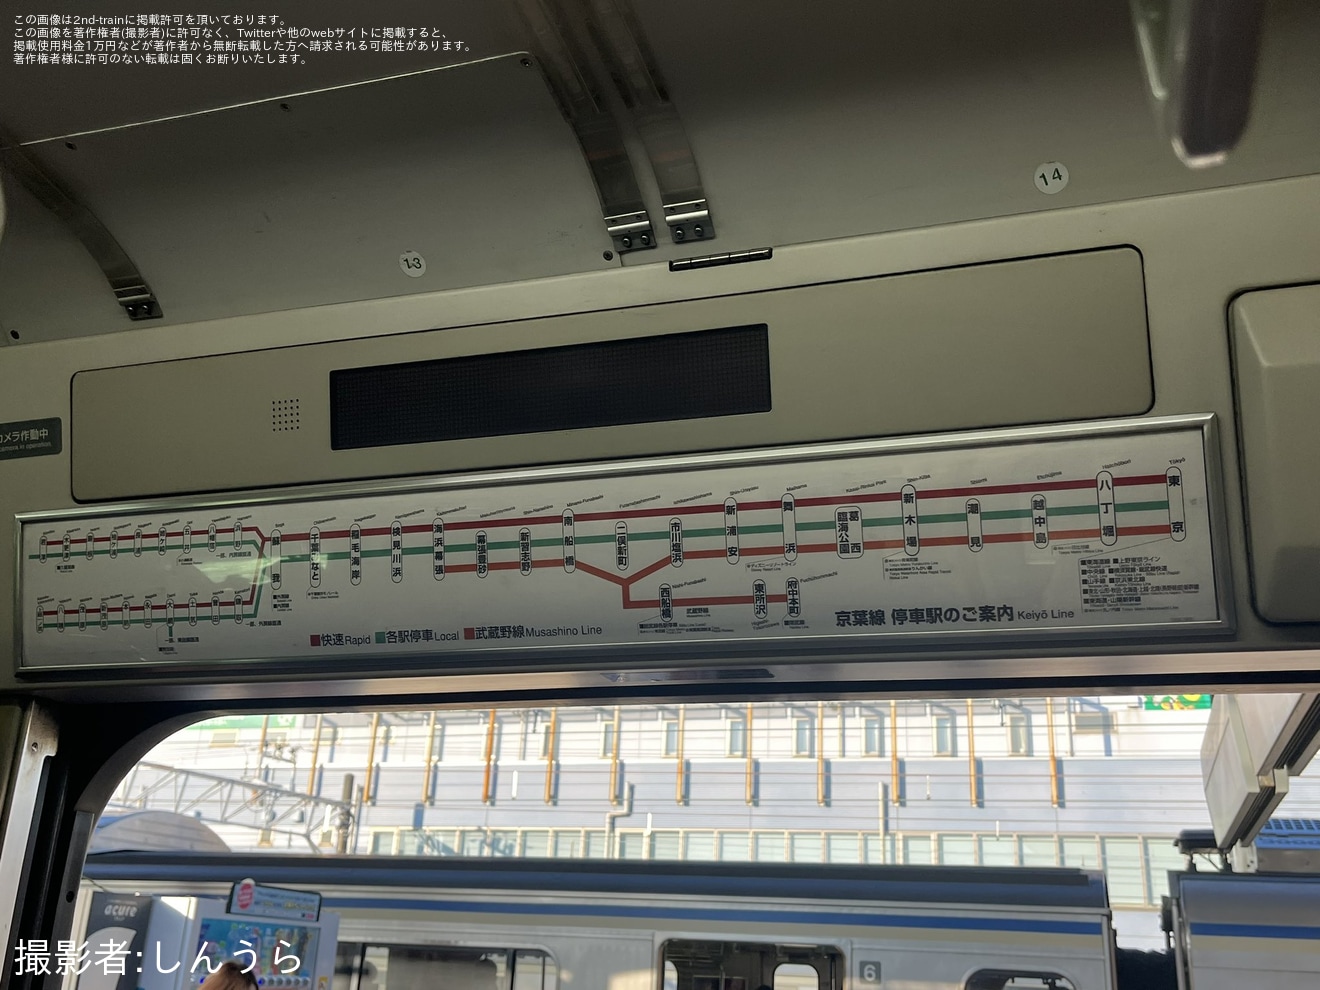 【JR東】209系ケヨ34編成限定の「京葉線 停車駅のご案内」が新しいものにの拡大写真